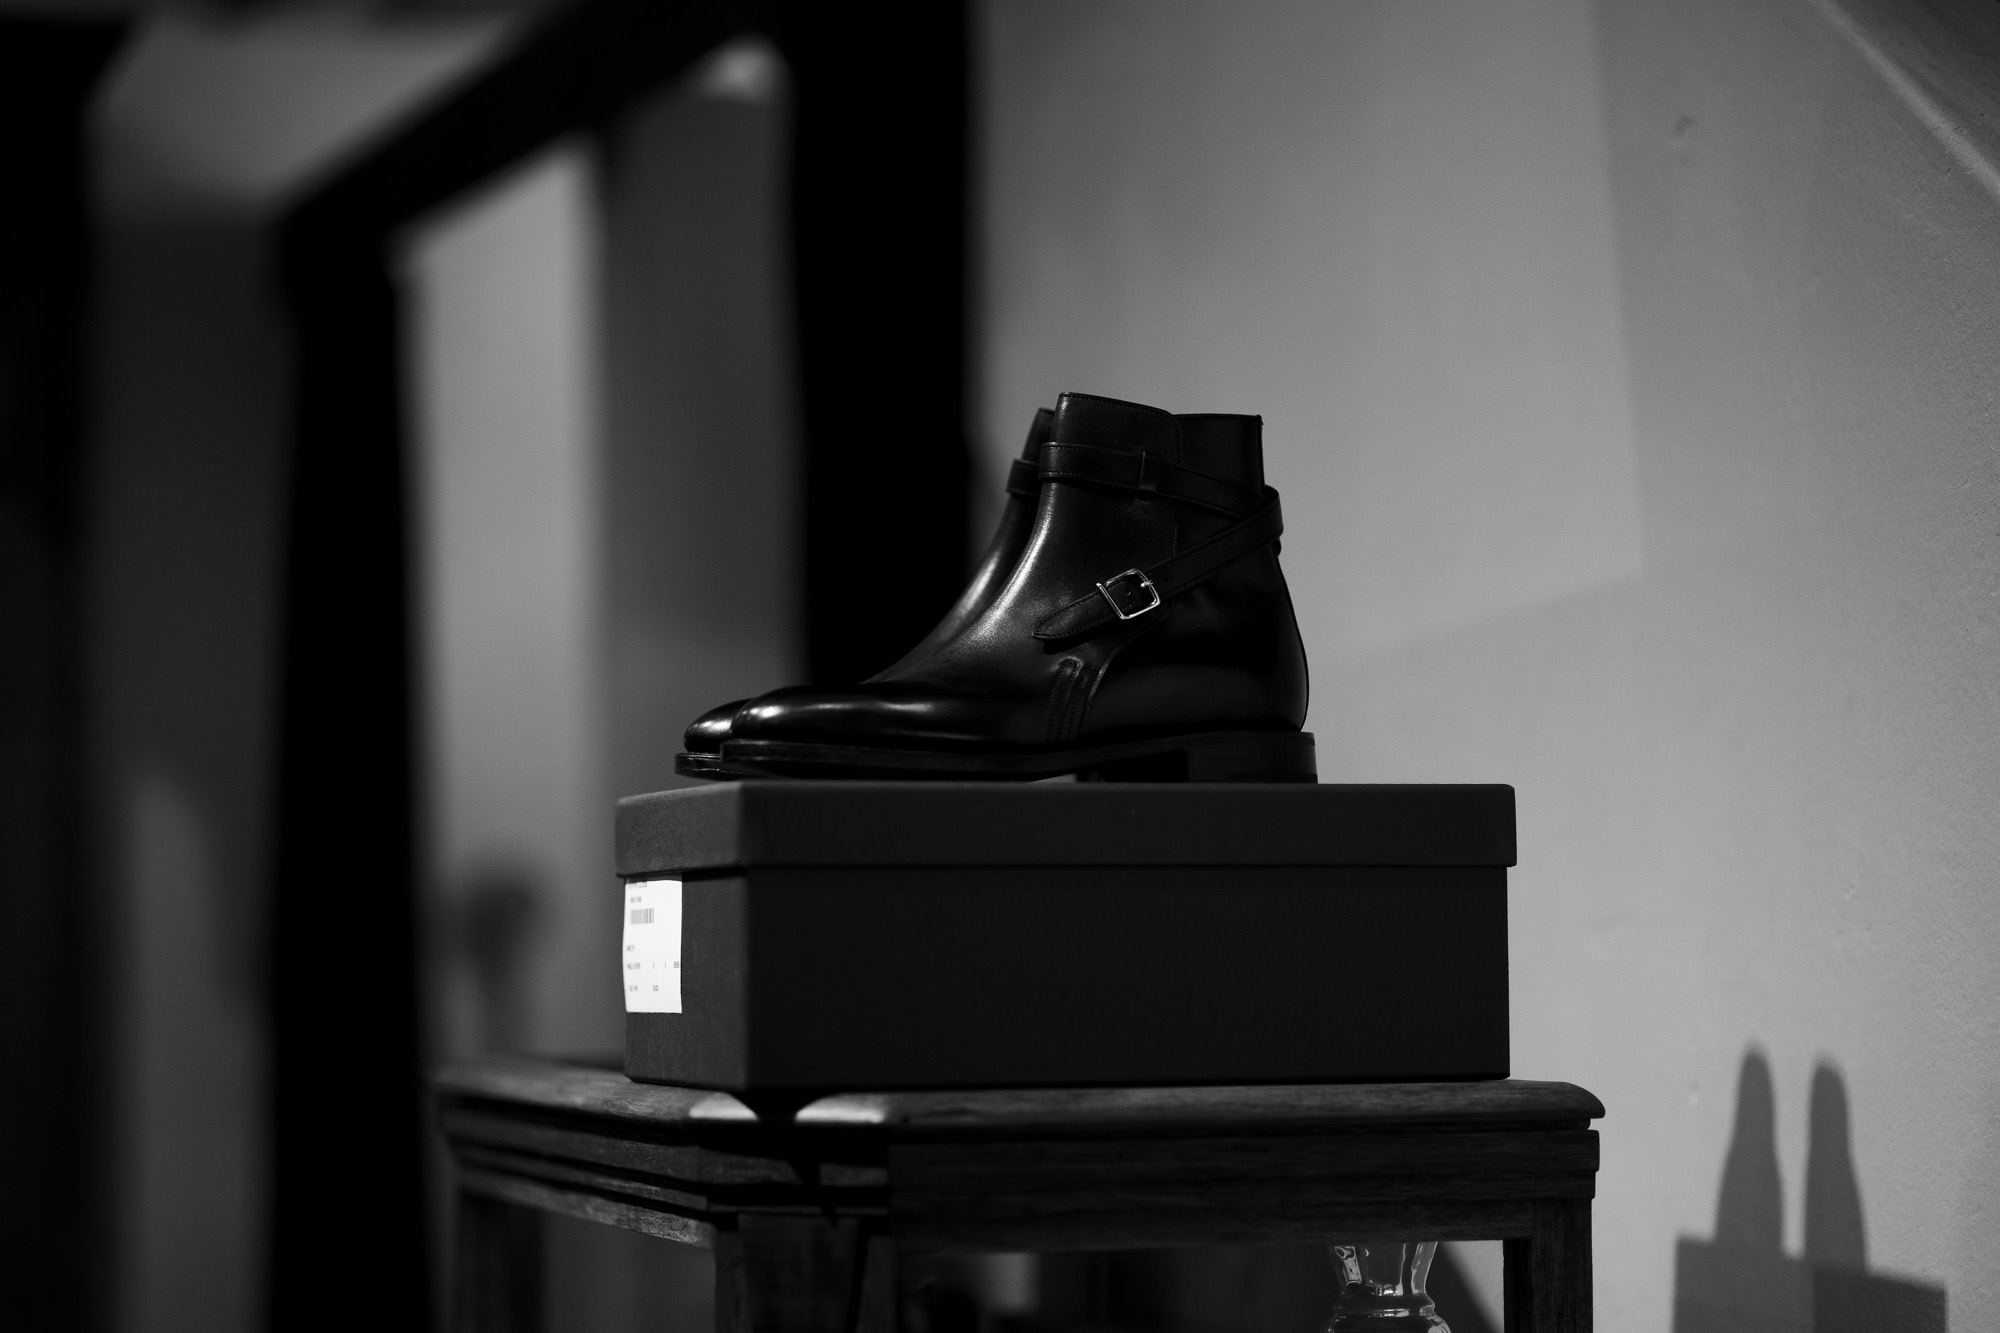 JOHN LOBB (ジョンロブ) ABBOT (アボット) 8695B Jodhpur Boots Black Calf ブラックカーフレザー ジョッパーブーツ BLACK (ブラック) Made In England (イギリス製) 2021 愛知 名古屋 Alto e Diritto altoediritto アルトエデリット ブーツ レザーブーツ johnlobbブーツ